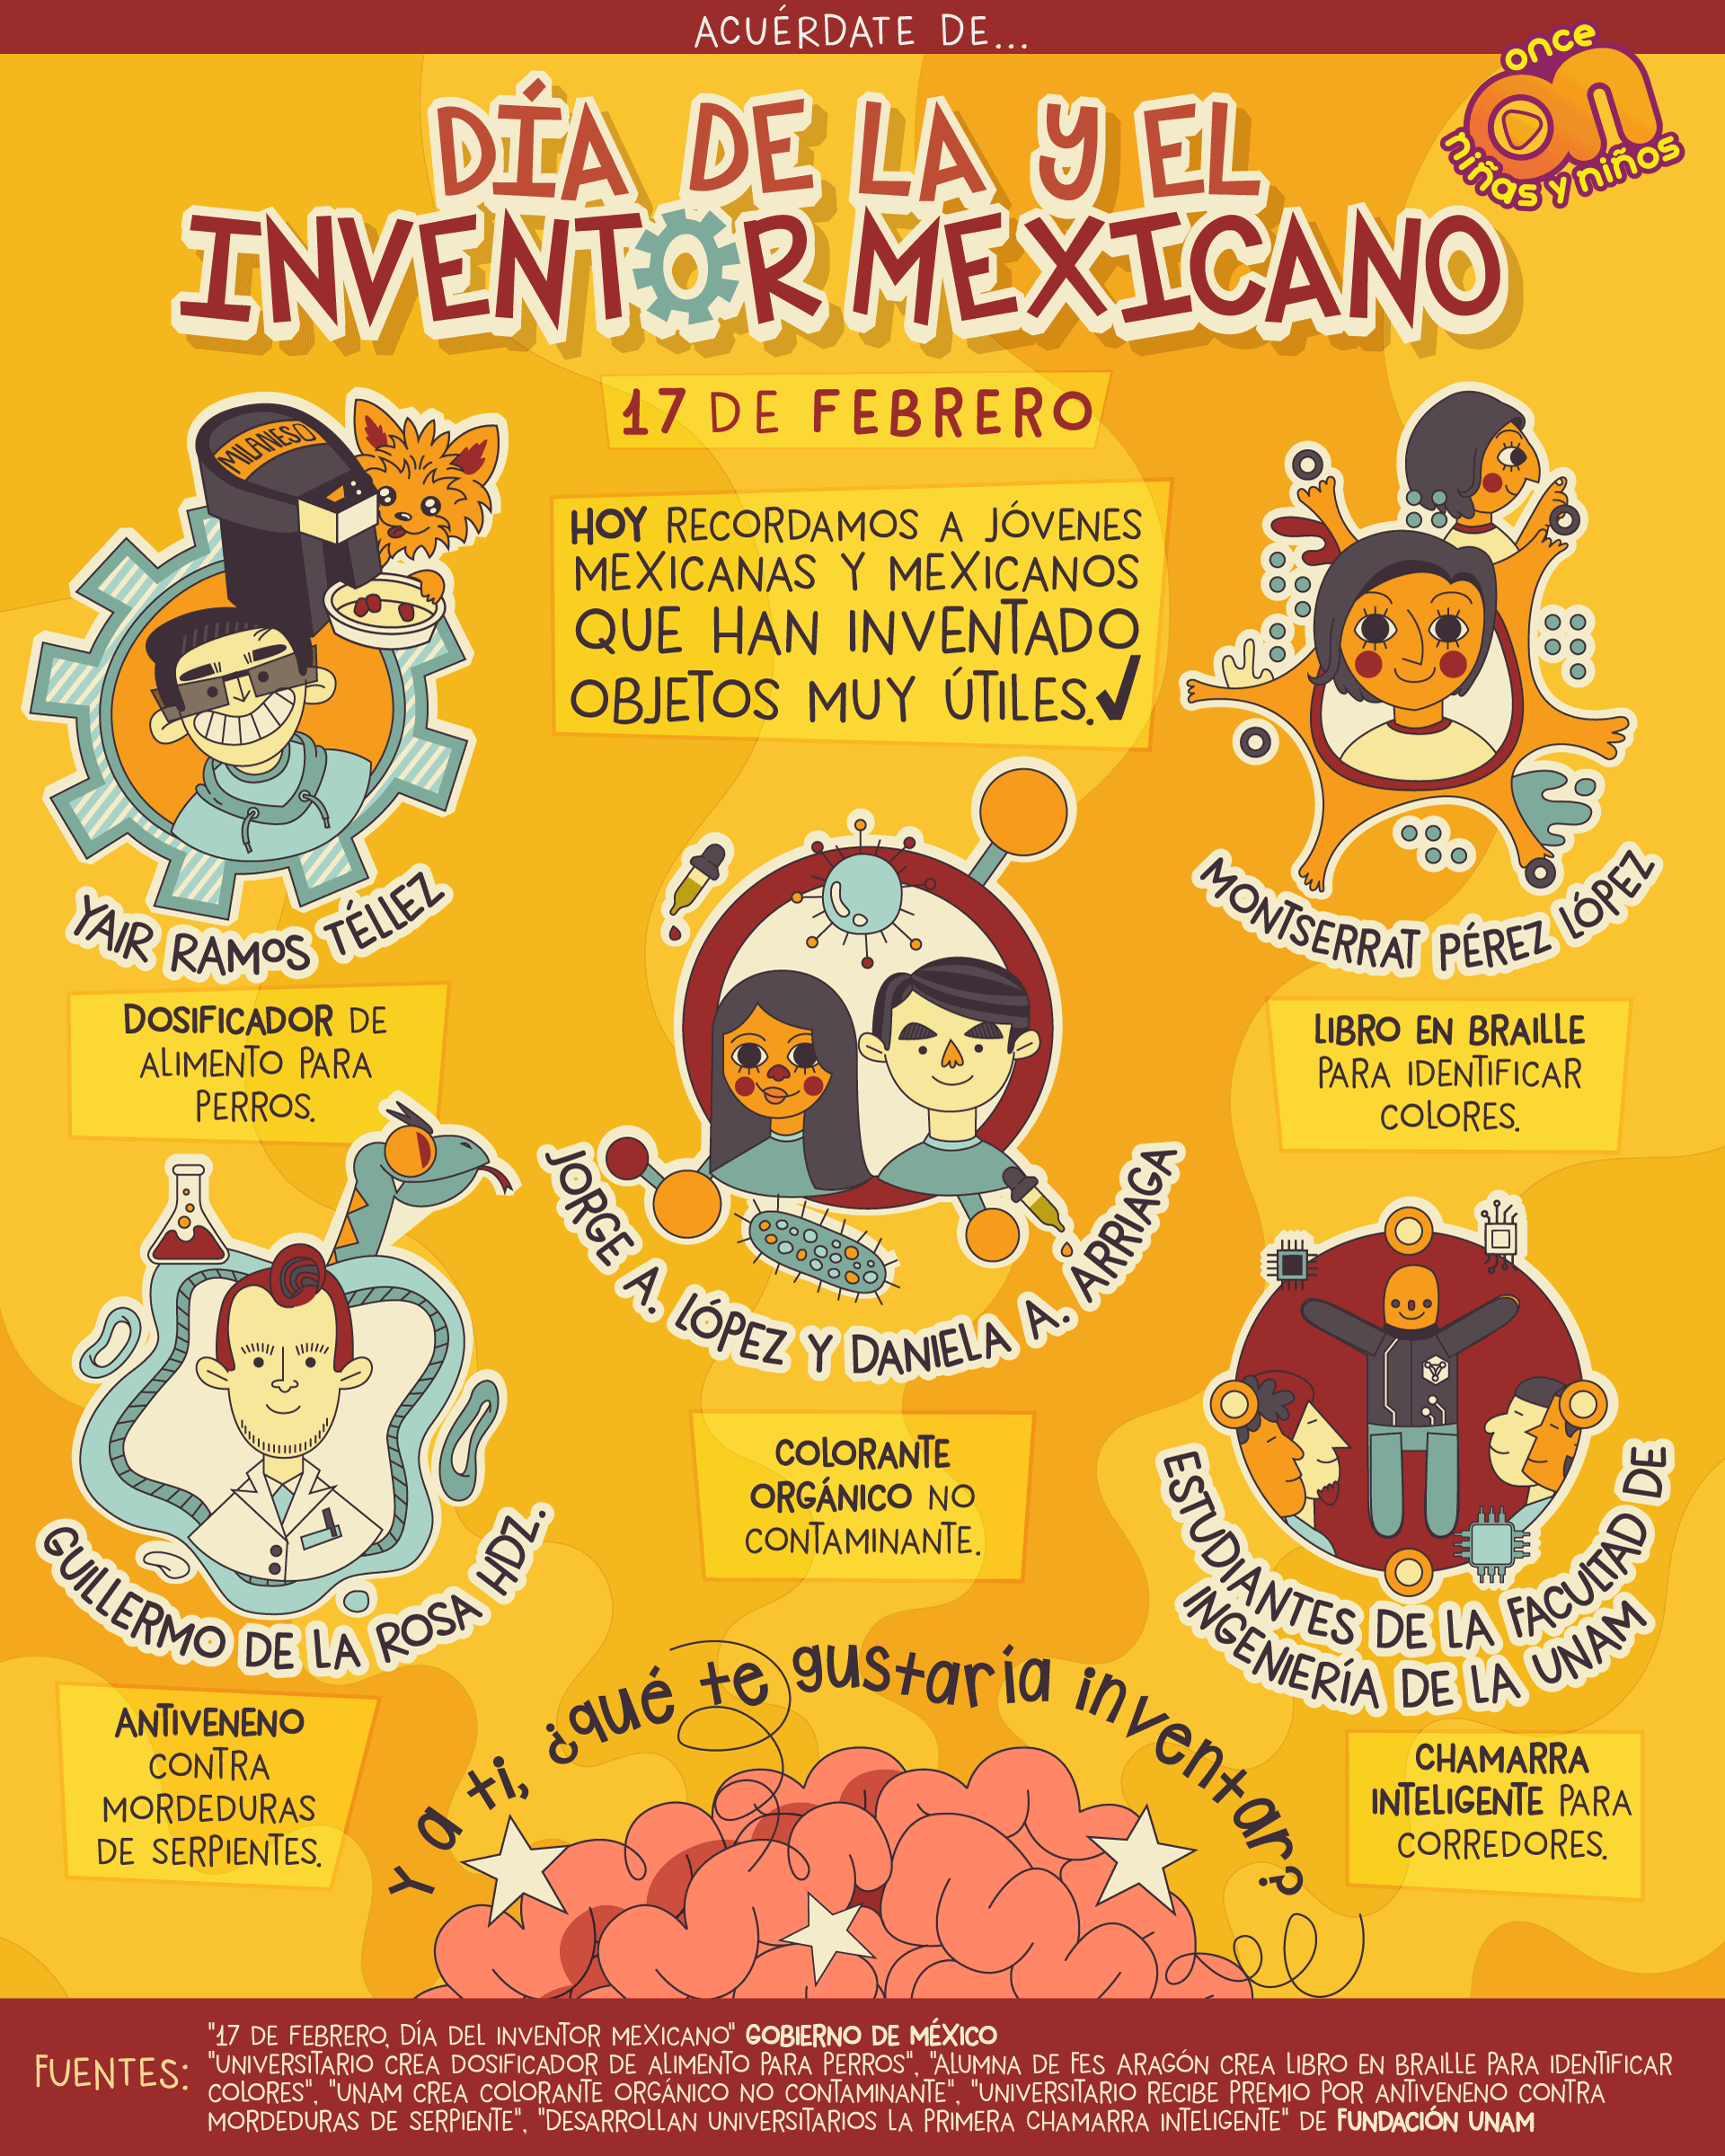 Día de la inventora y el inventor mexicano 
17 de febrero 
Once Niñas y Niños. 
Acuérdate de...
